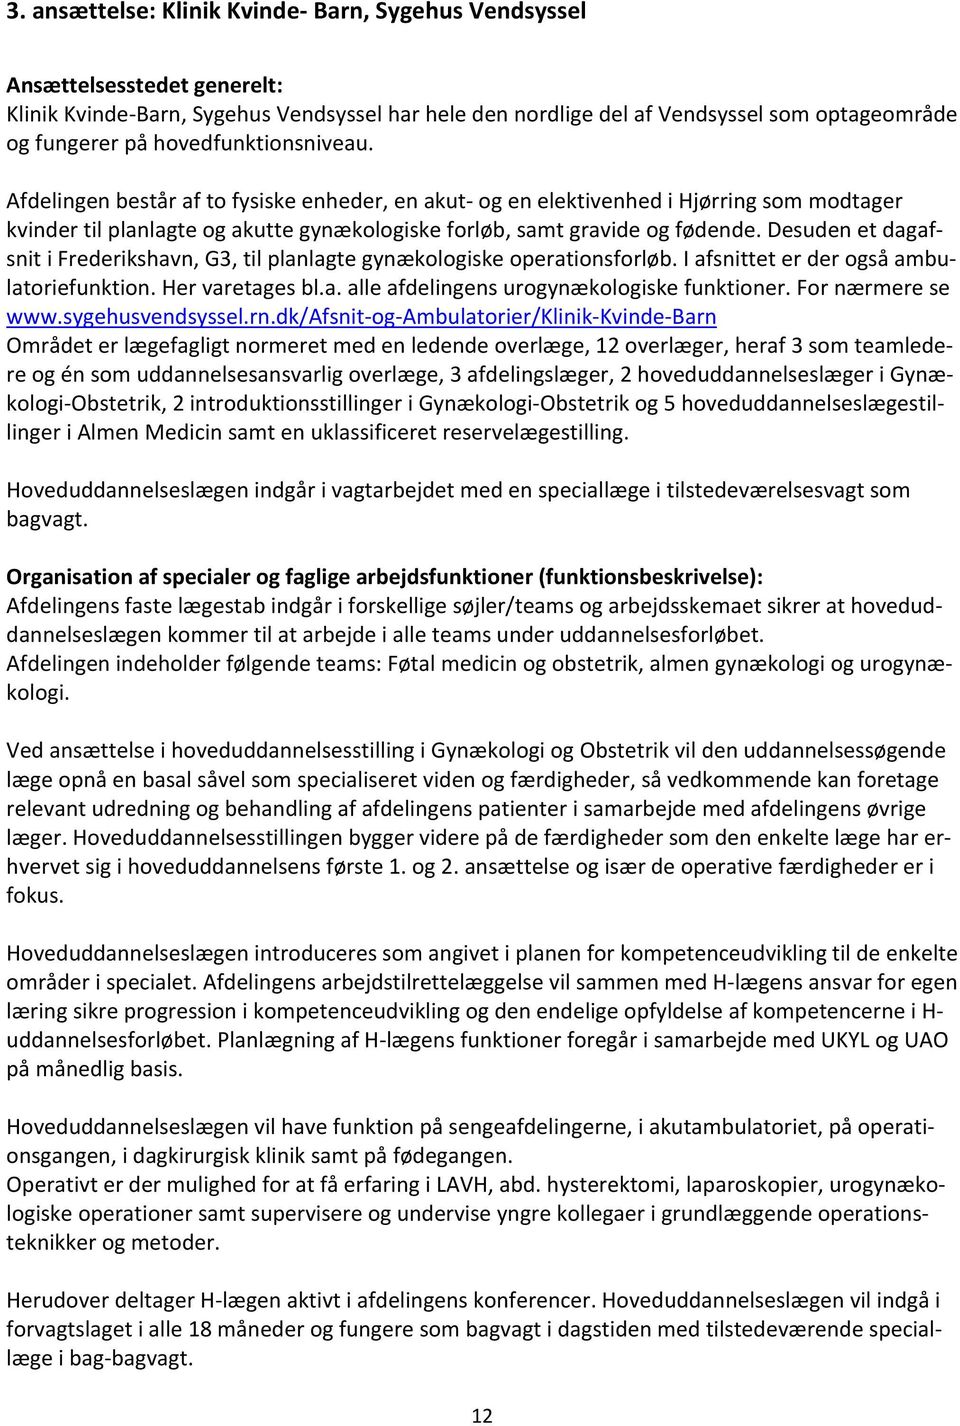 Desuden et dagafsnit i Frederikshavn, G3, til planlagte gynækologiske operationsforløb. I afsnittet er der også ambulatoriefunktion. Her varetages bl.a. alle afdelingens urogynækologiske funktioner.